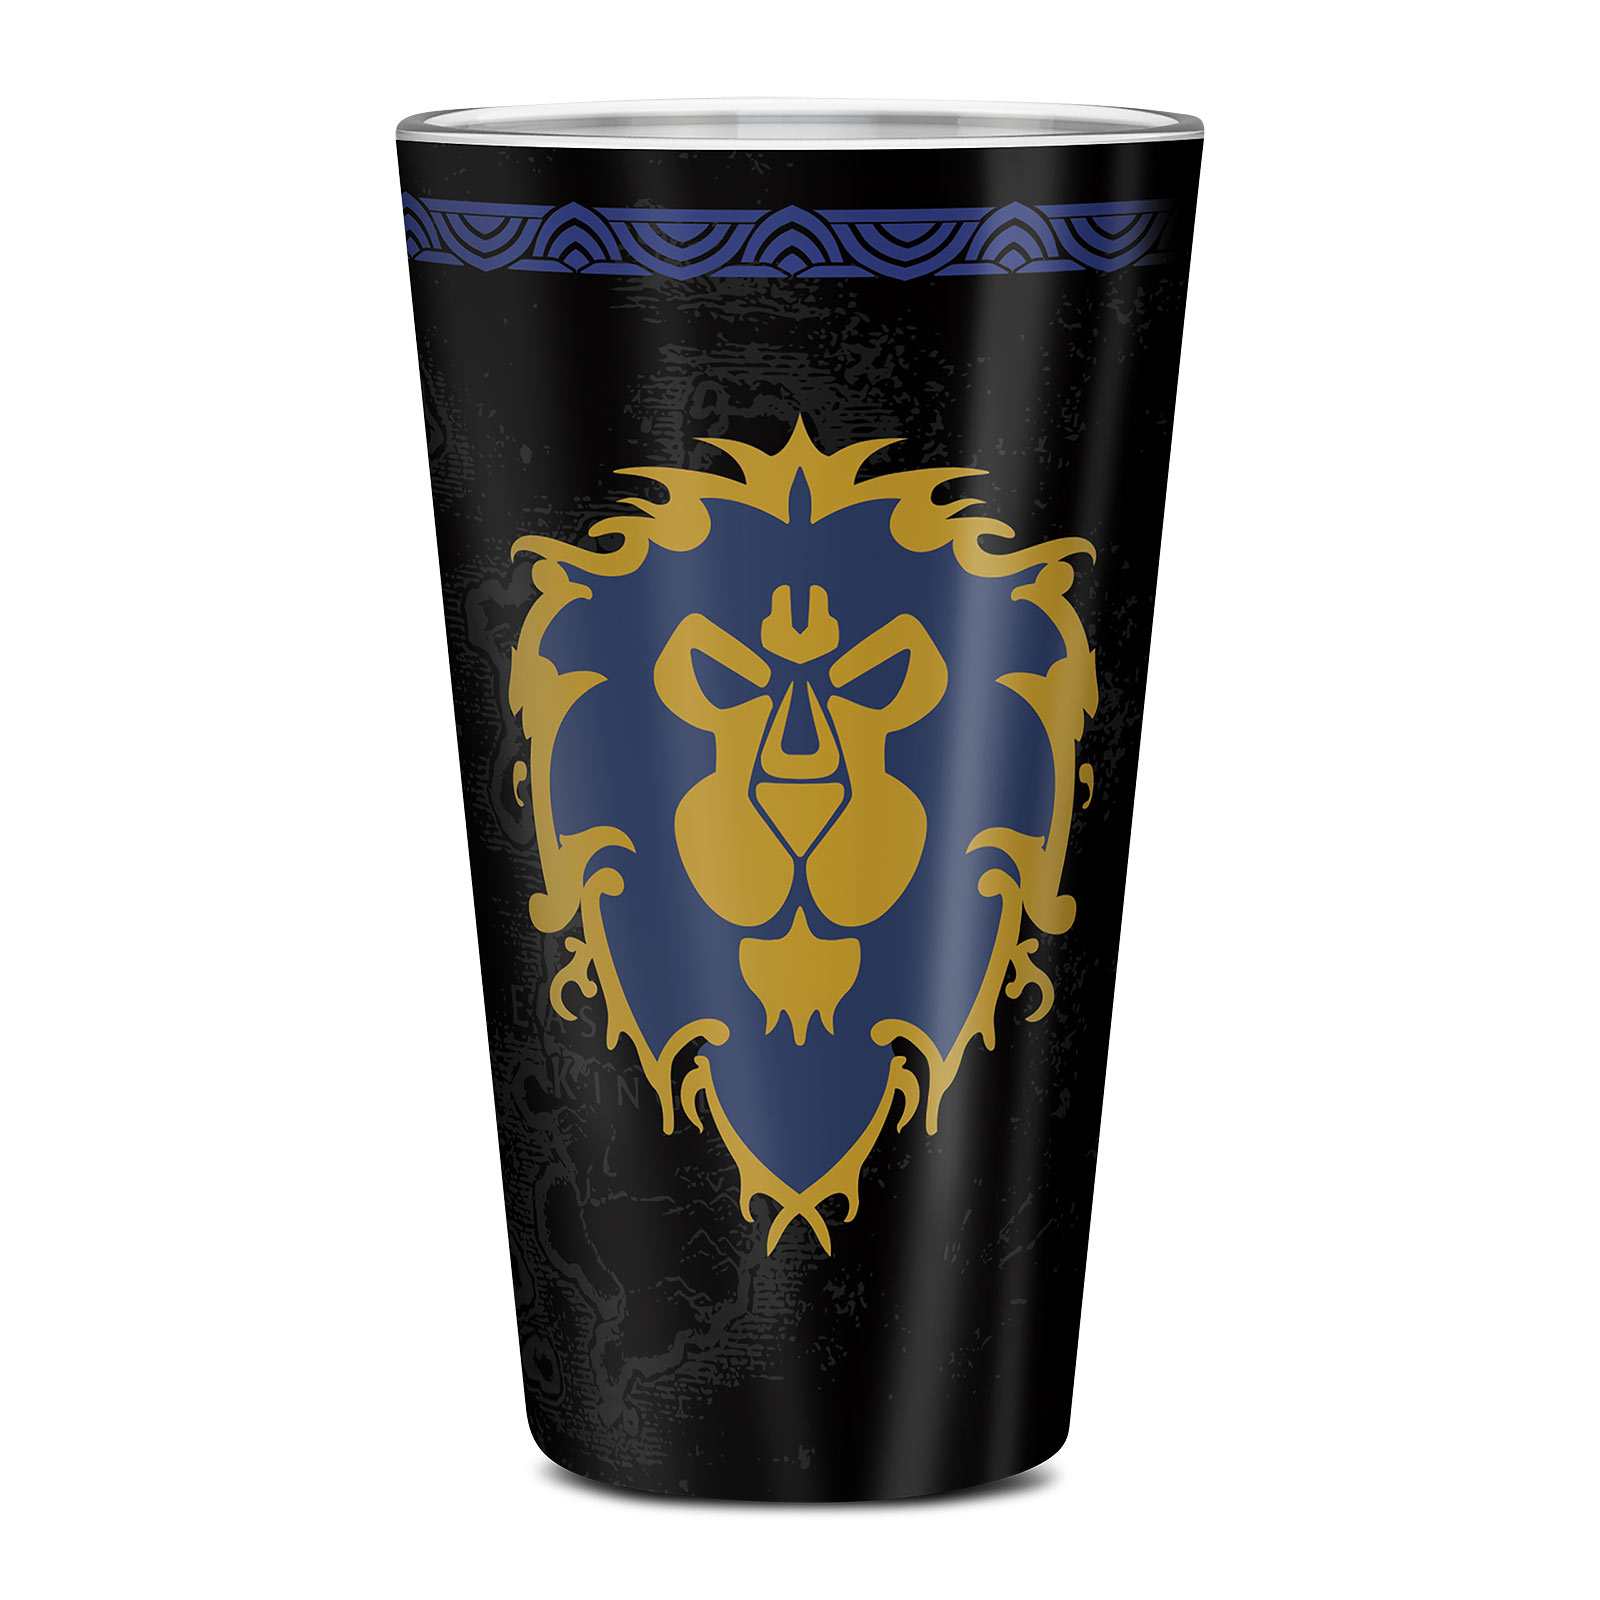 World of Warcraft - Alliance Crest Glass